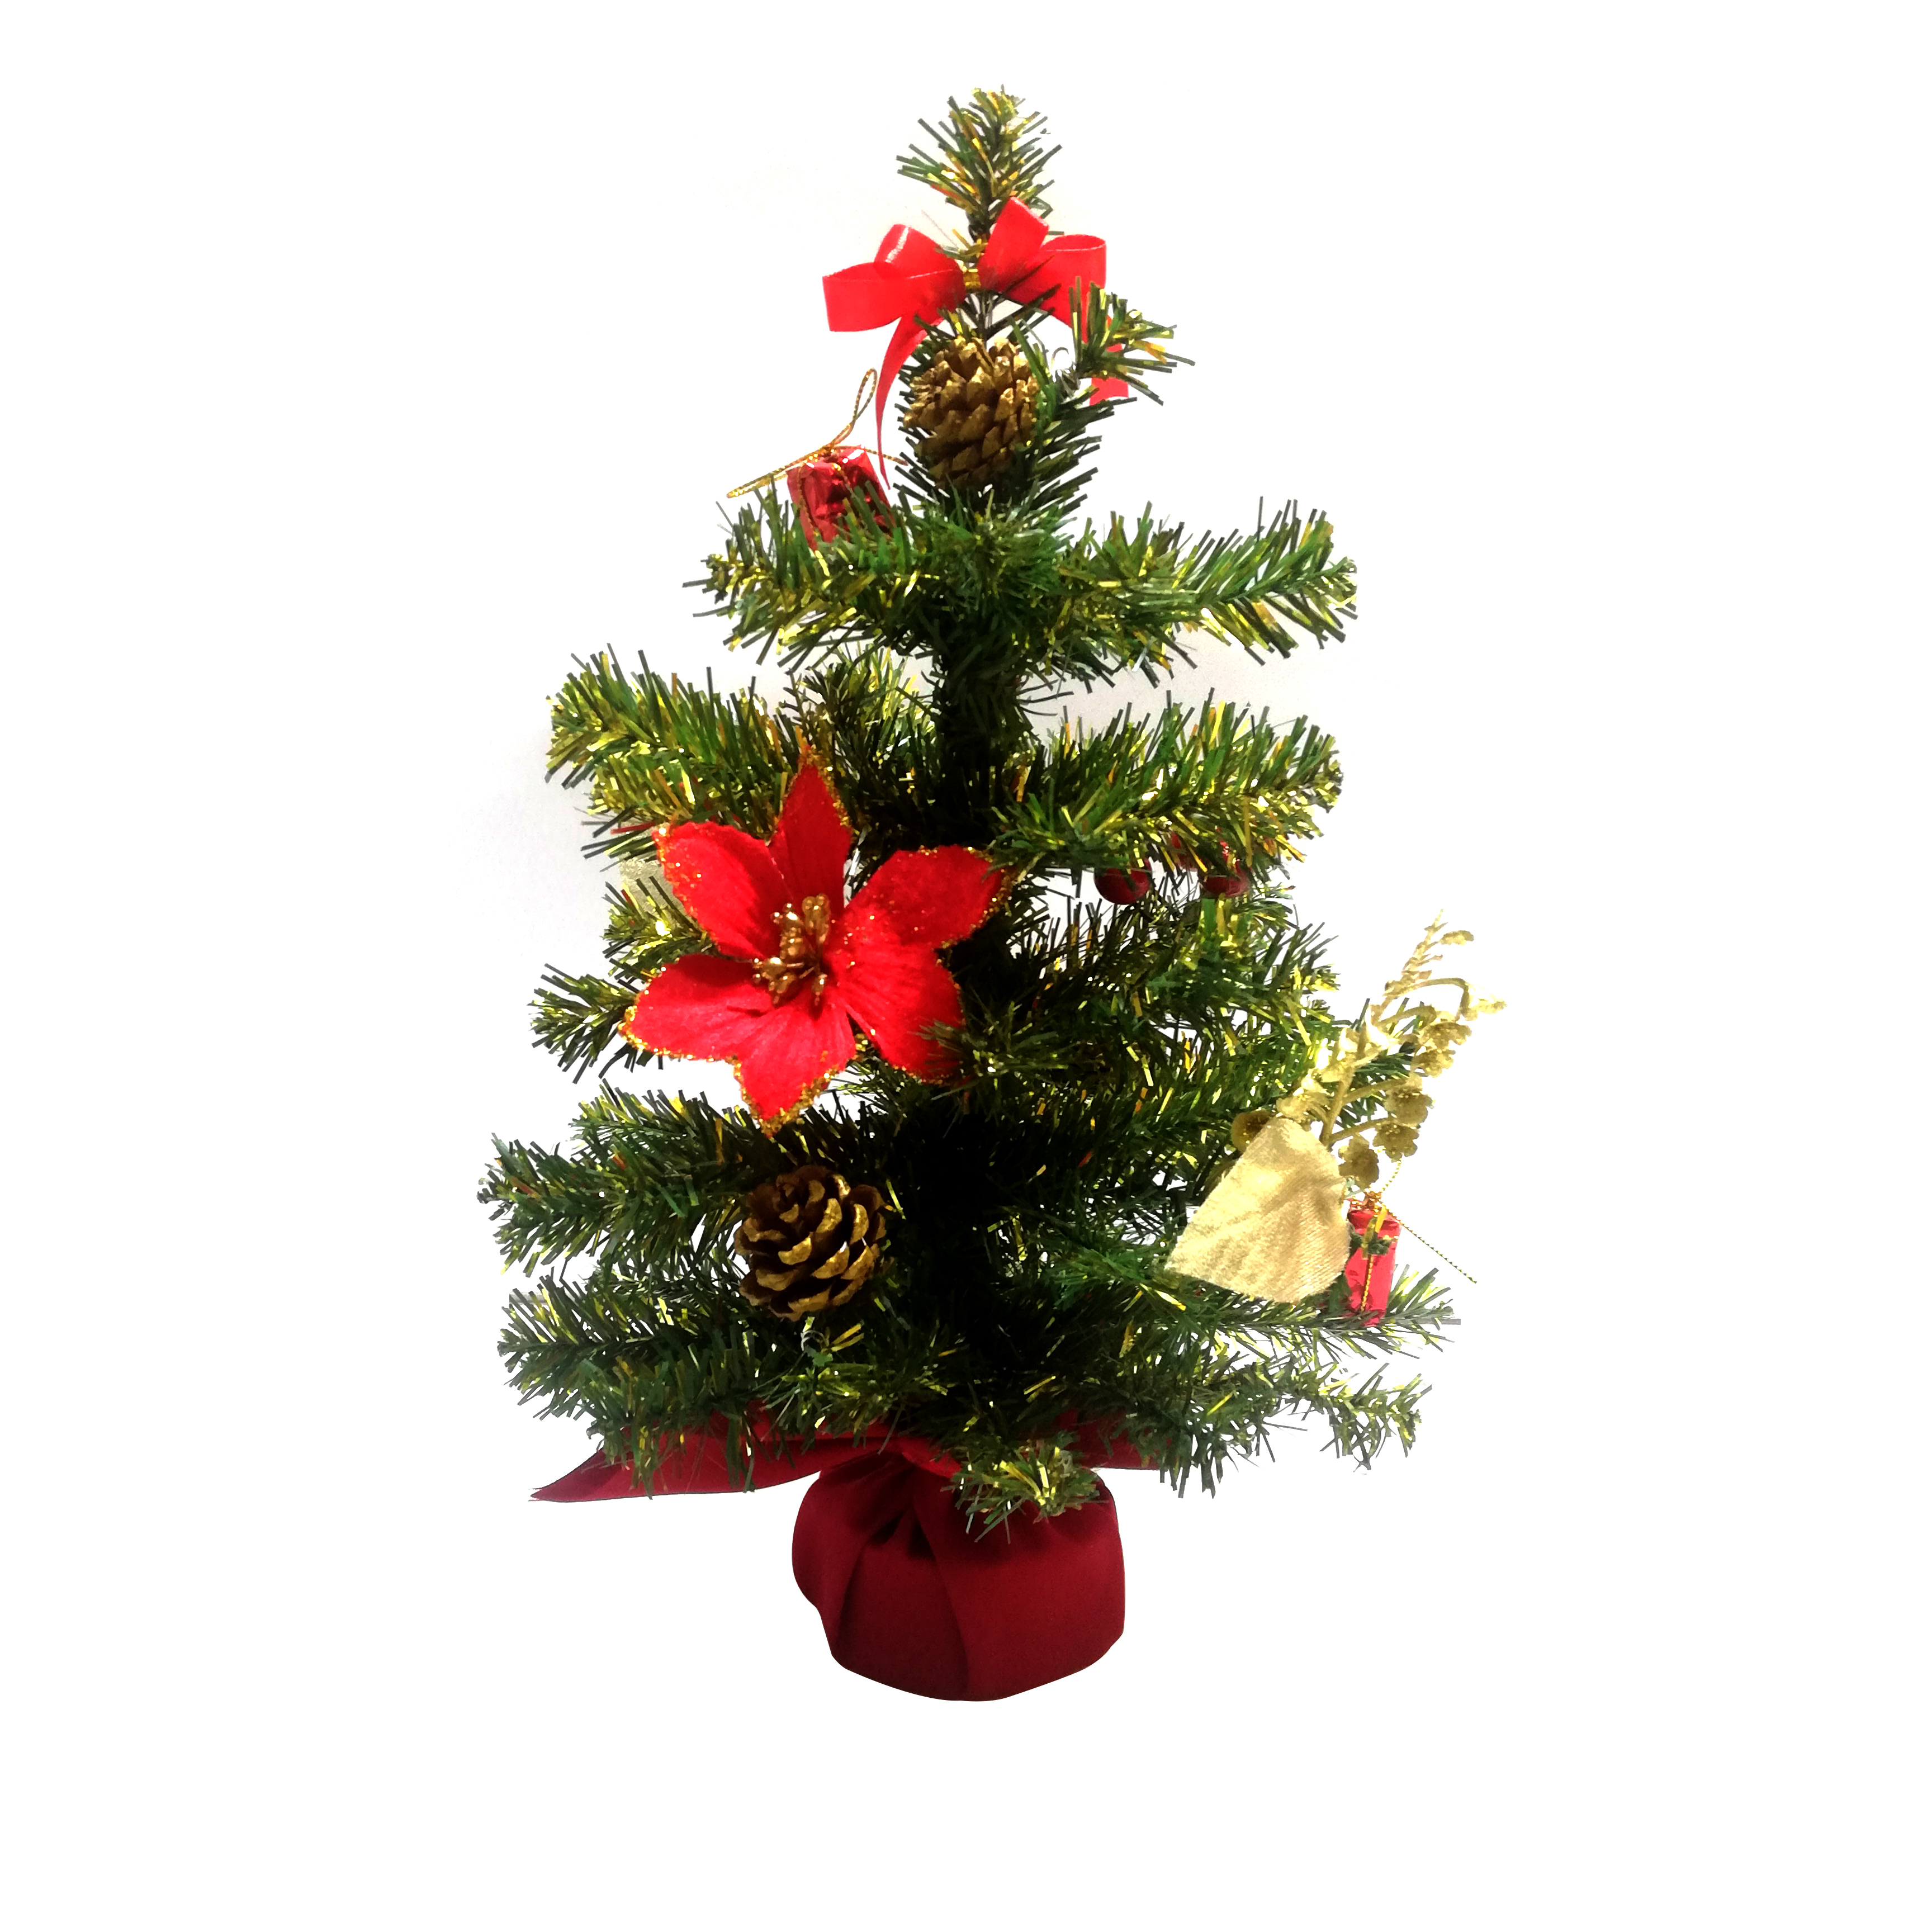 Cây Thông Noel Mini Để Bàn Màu Xanh Phối Hợp Màu Vàng Cao 40cm - 60cm - Trang Trí Lễ Giáng Sinh Tặng Kèm Bọc Cần Số Monter Màu Ngẫu Nhiên - 40cm